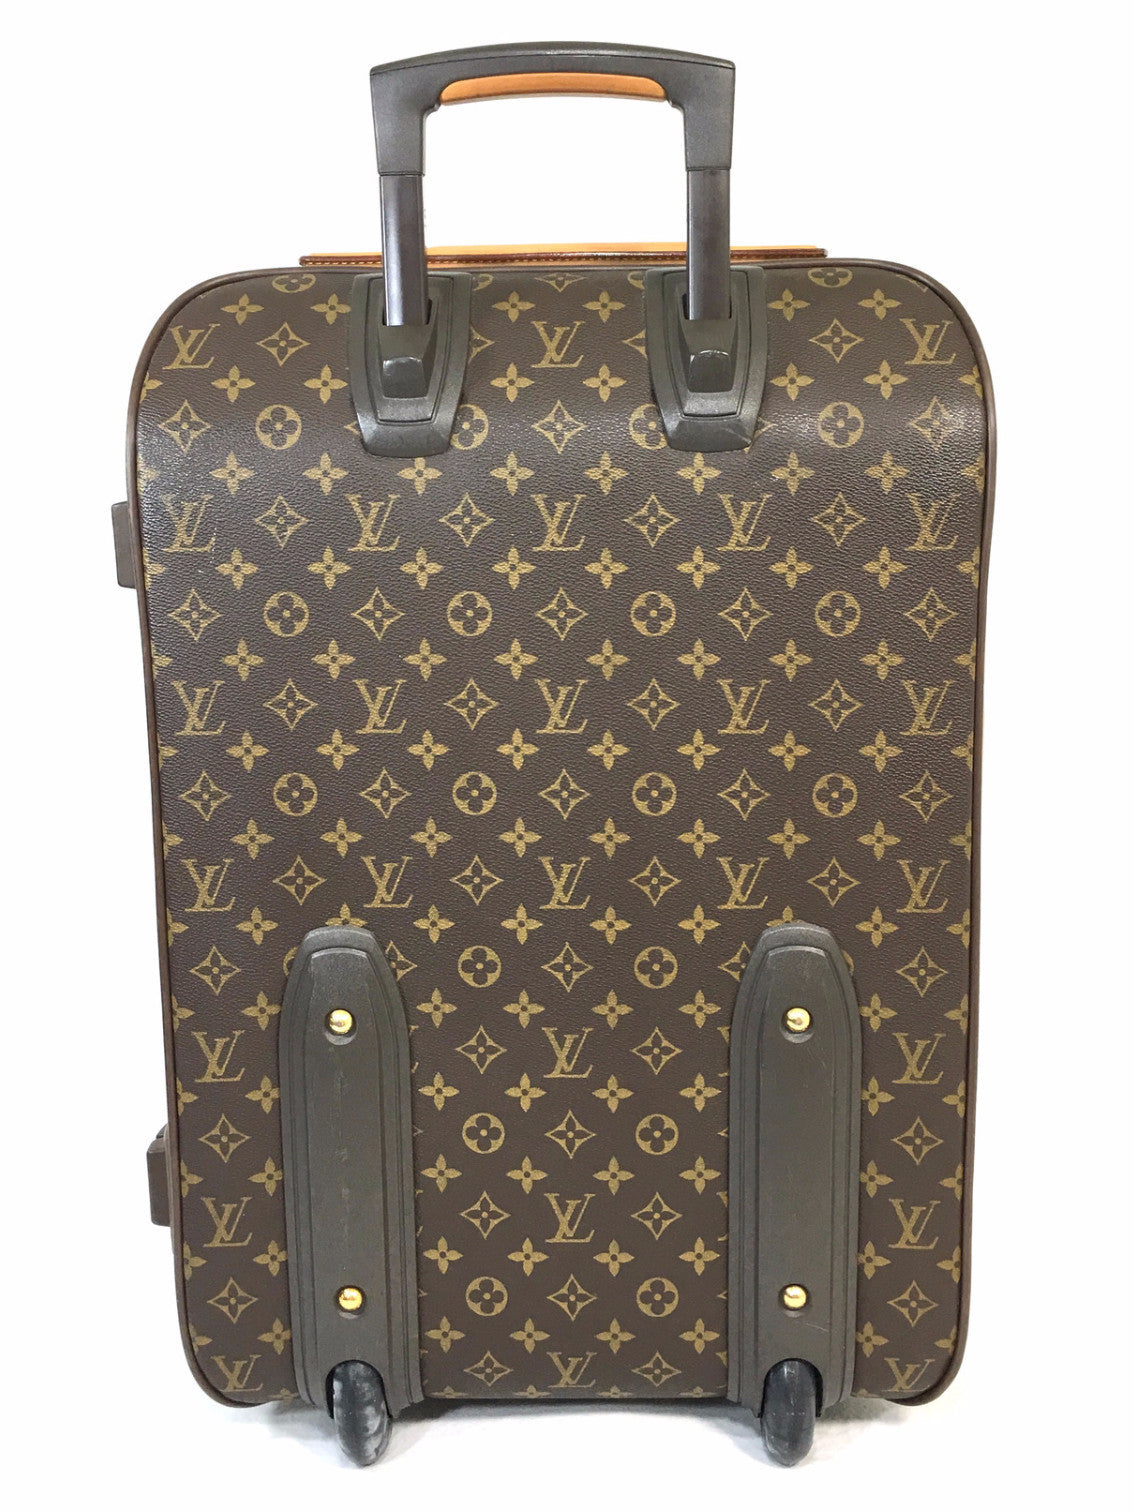 Authentic Louis Vuitton Pégase Business 55 Rolling Suitcase